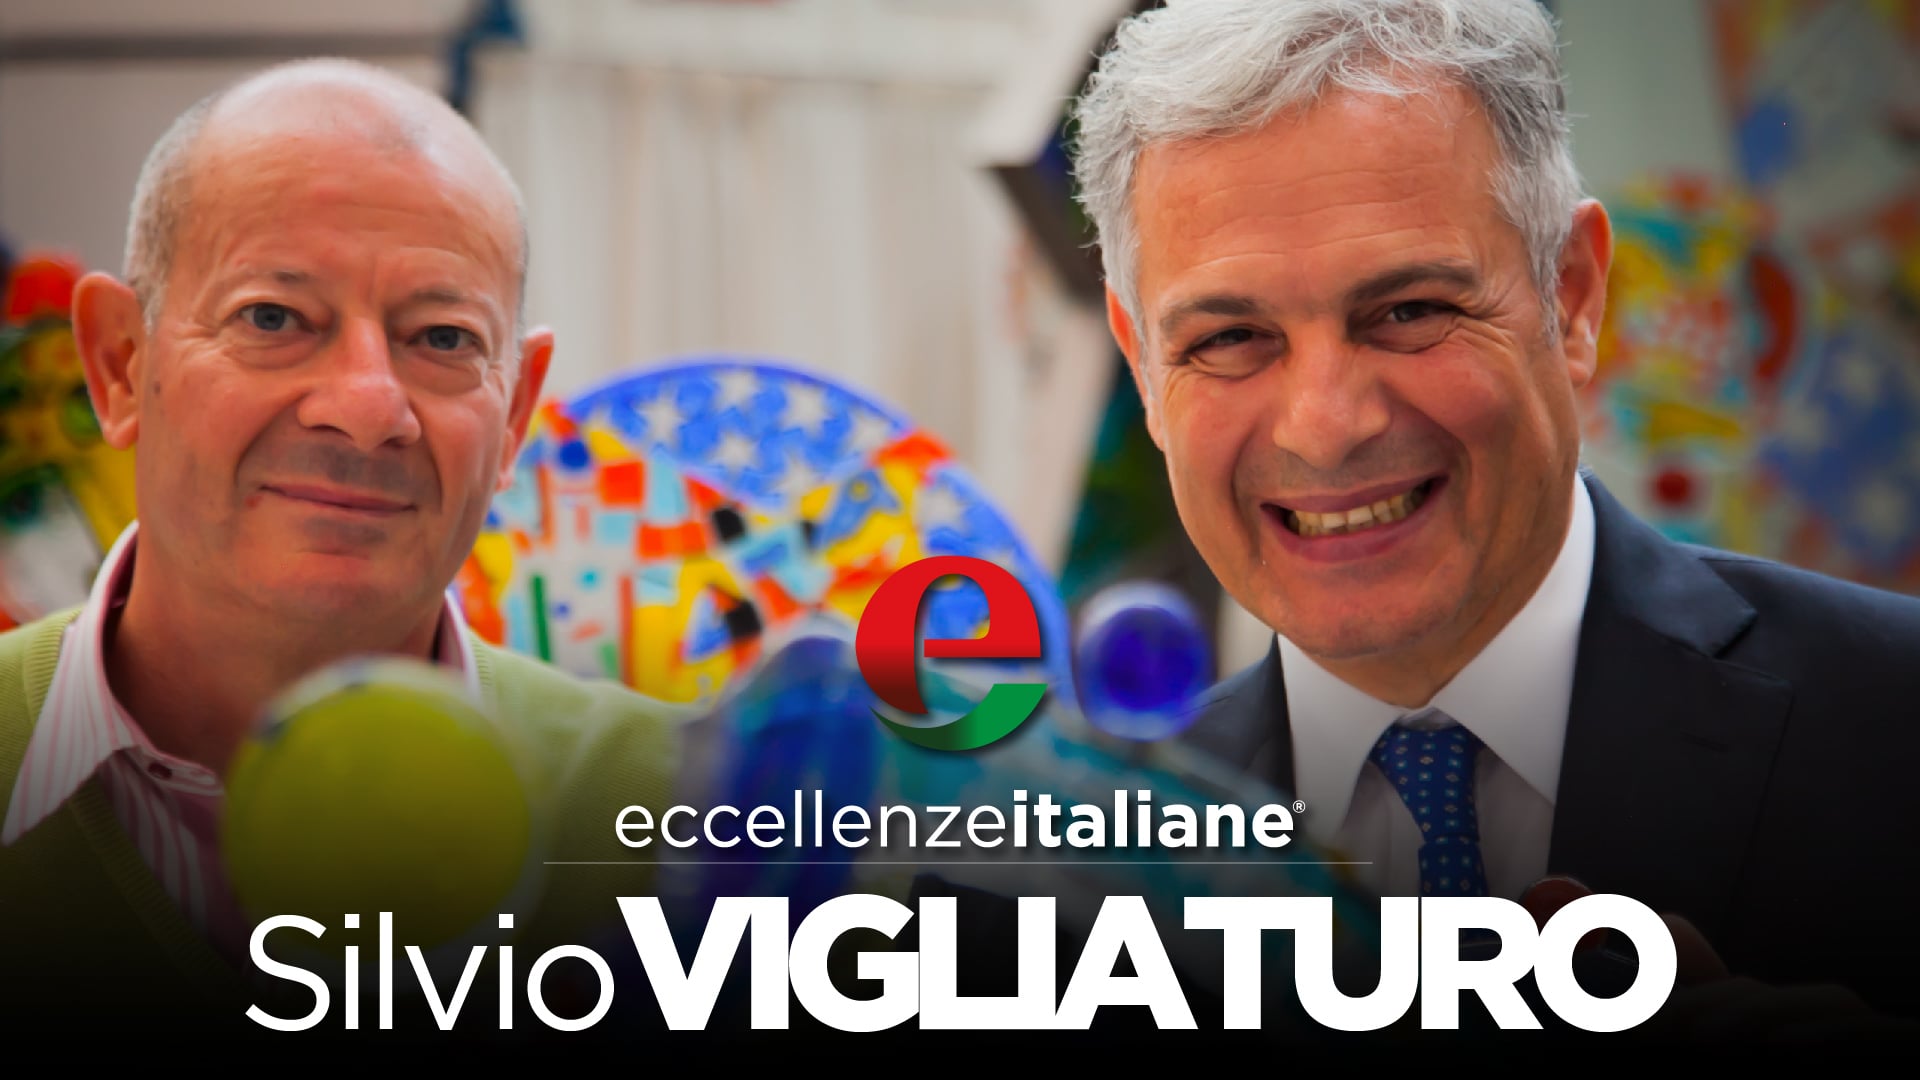 636111011 - Eccellenze Italiane TV